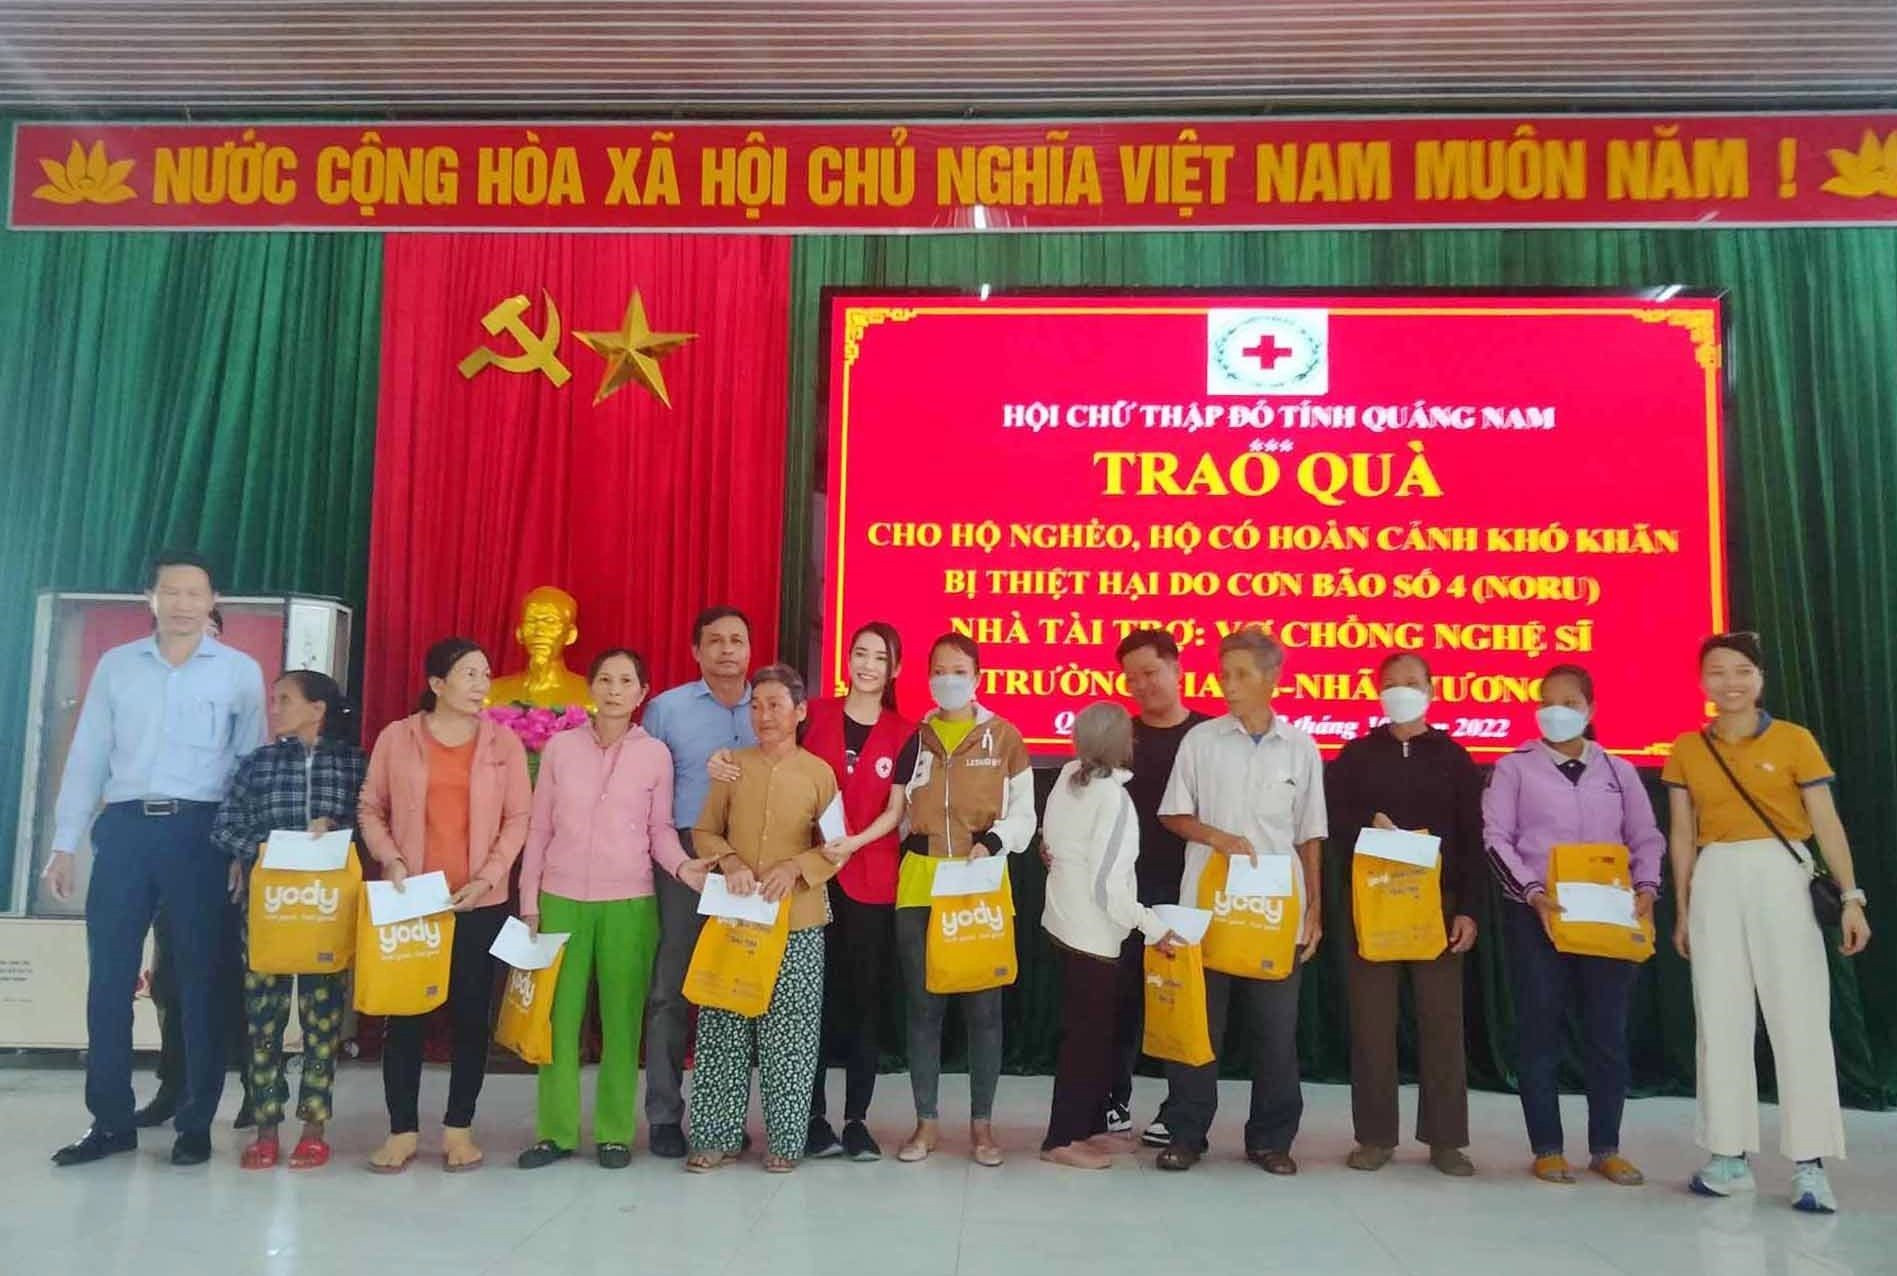 Lãnh đạo huyện Thăng Bình, xã Bình Chánh và các nghệ sĩ trao quà cho các hộ dân